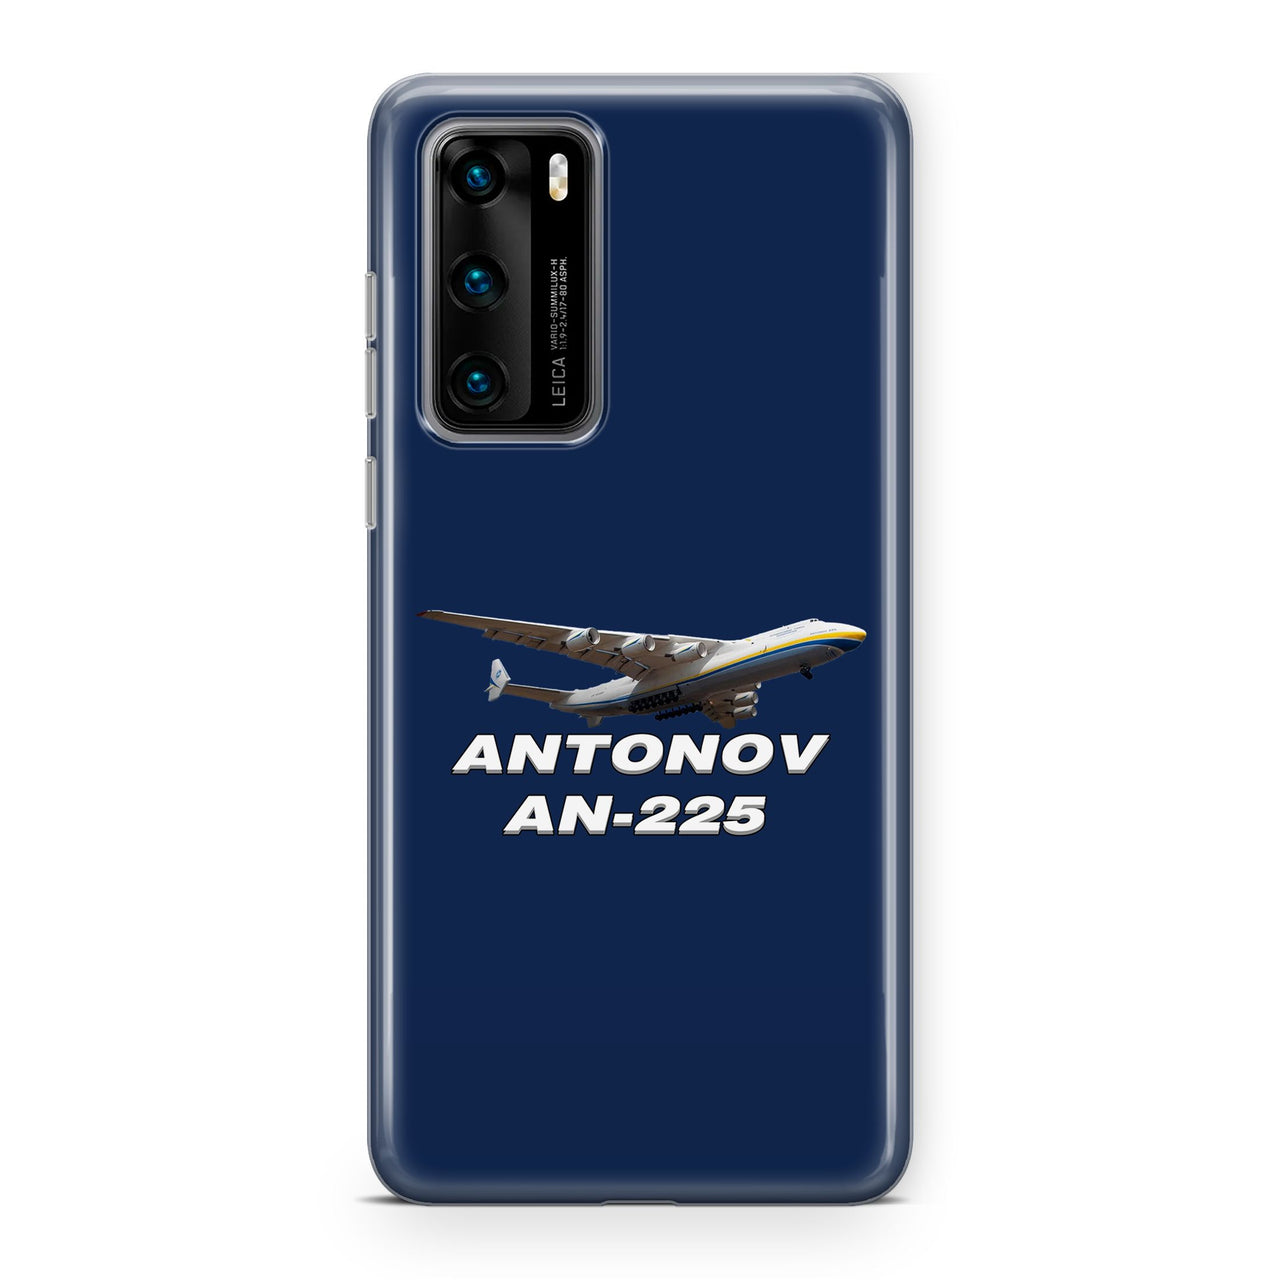 Antonov AN-225 (15) Designed Huawei Cases